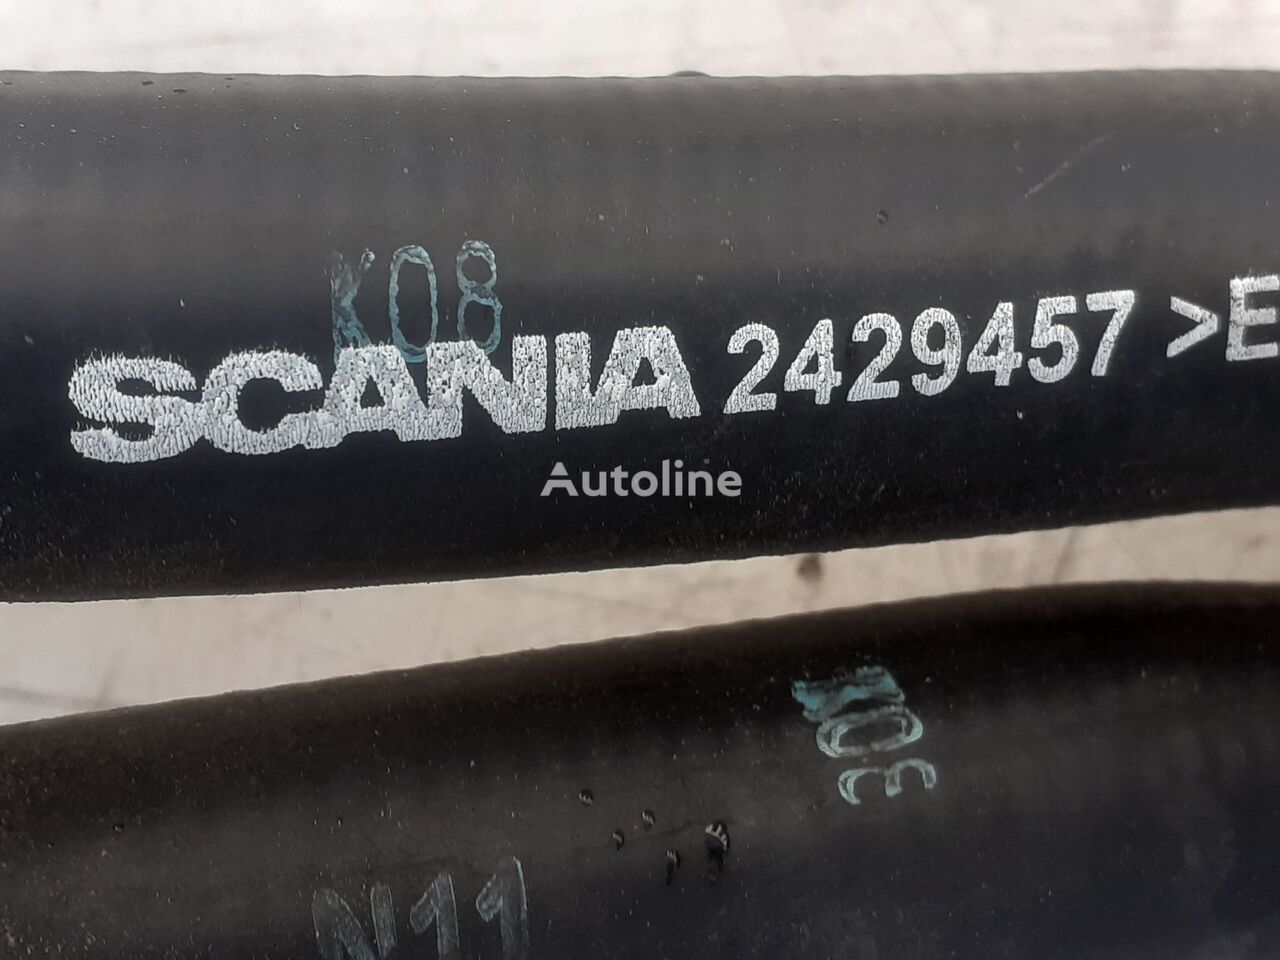 P450 2429457 cijevni priključak za Scania L,P,G,R,S series kamiona